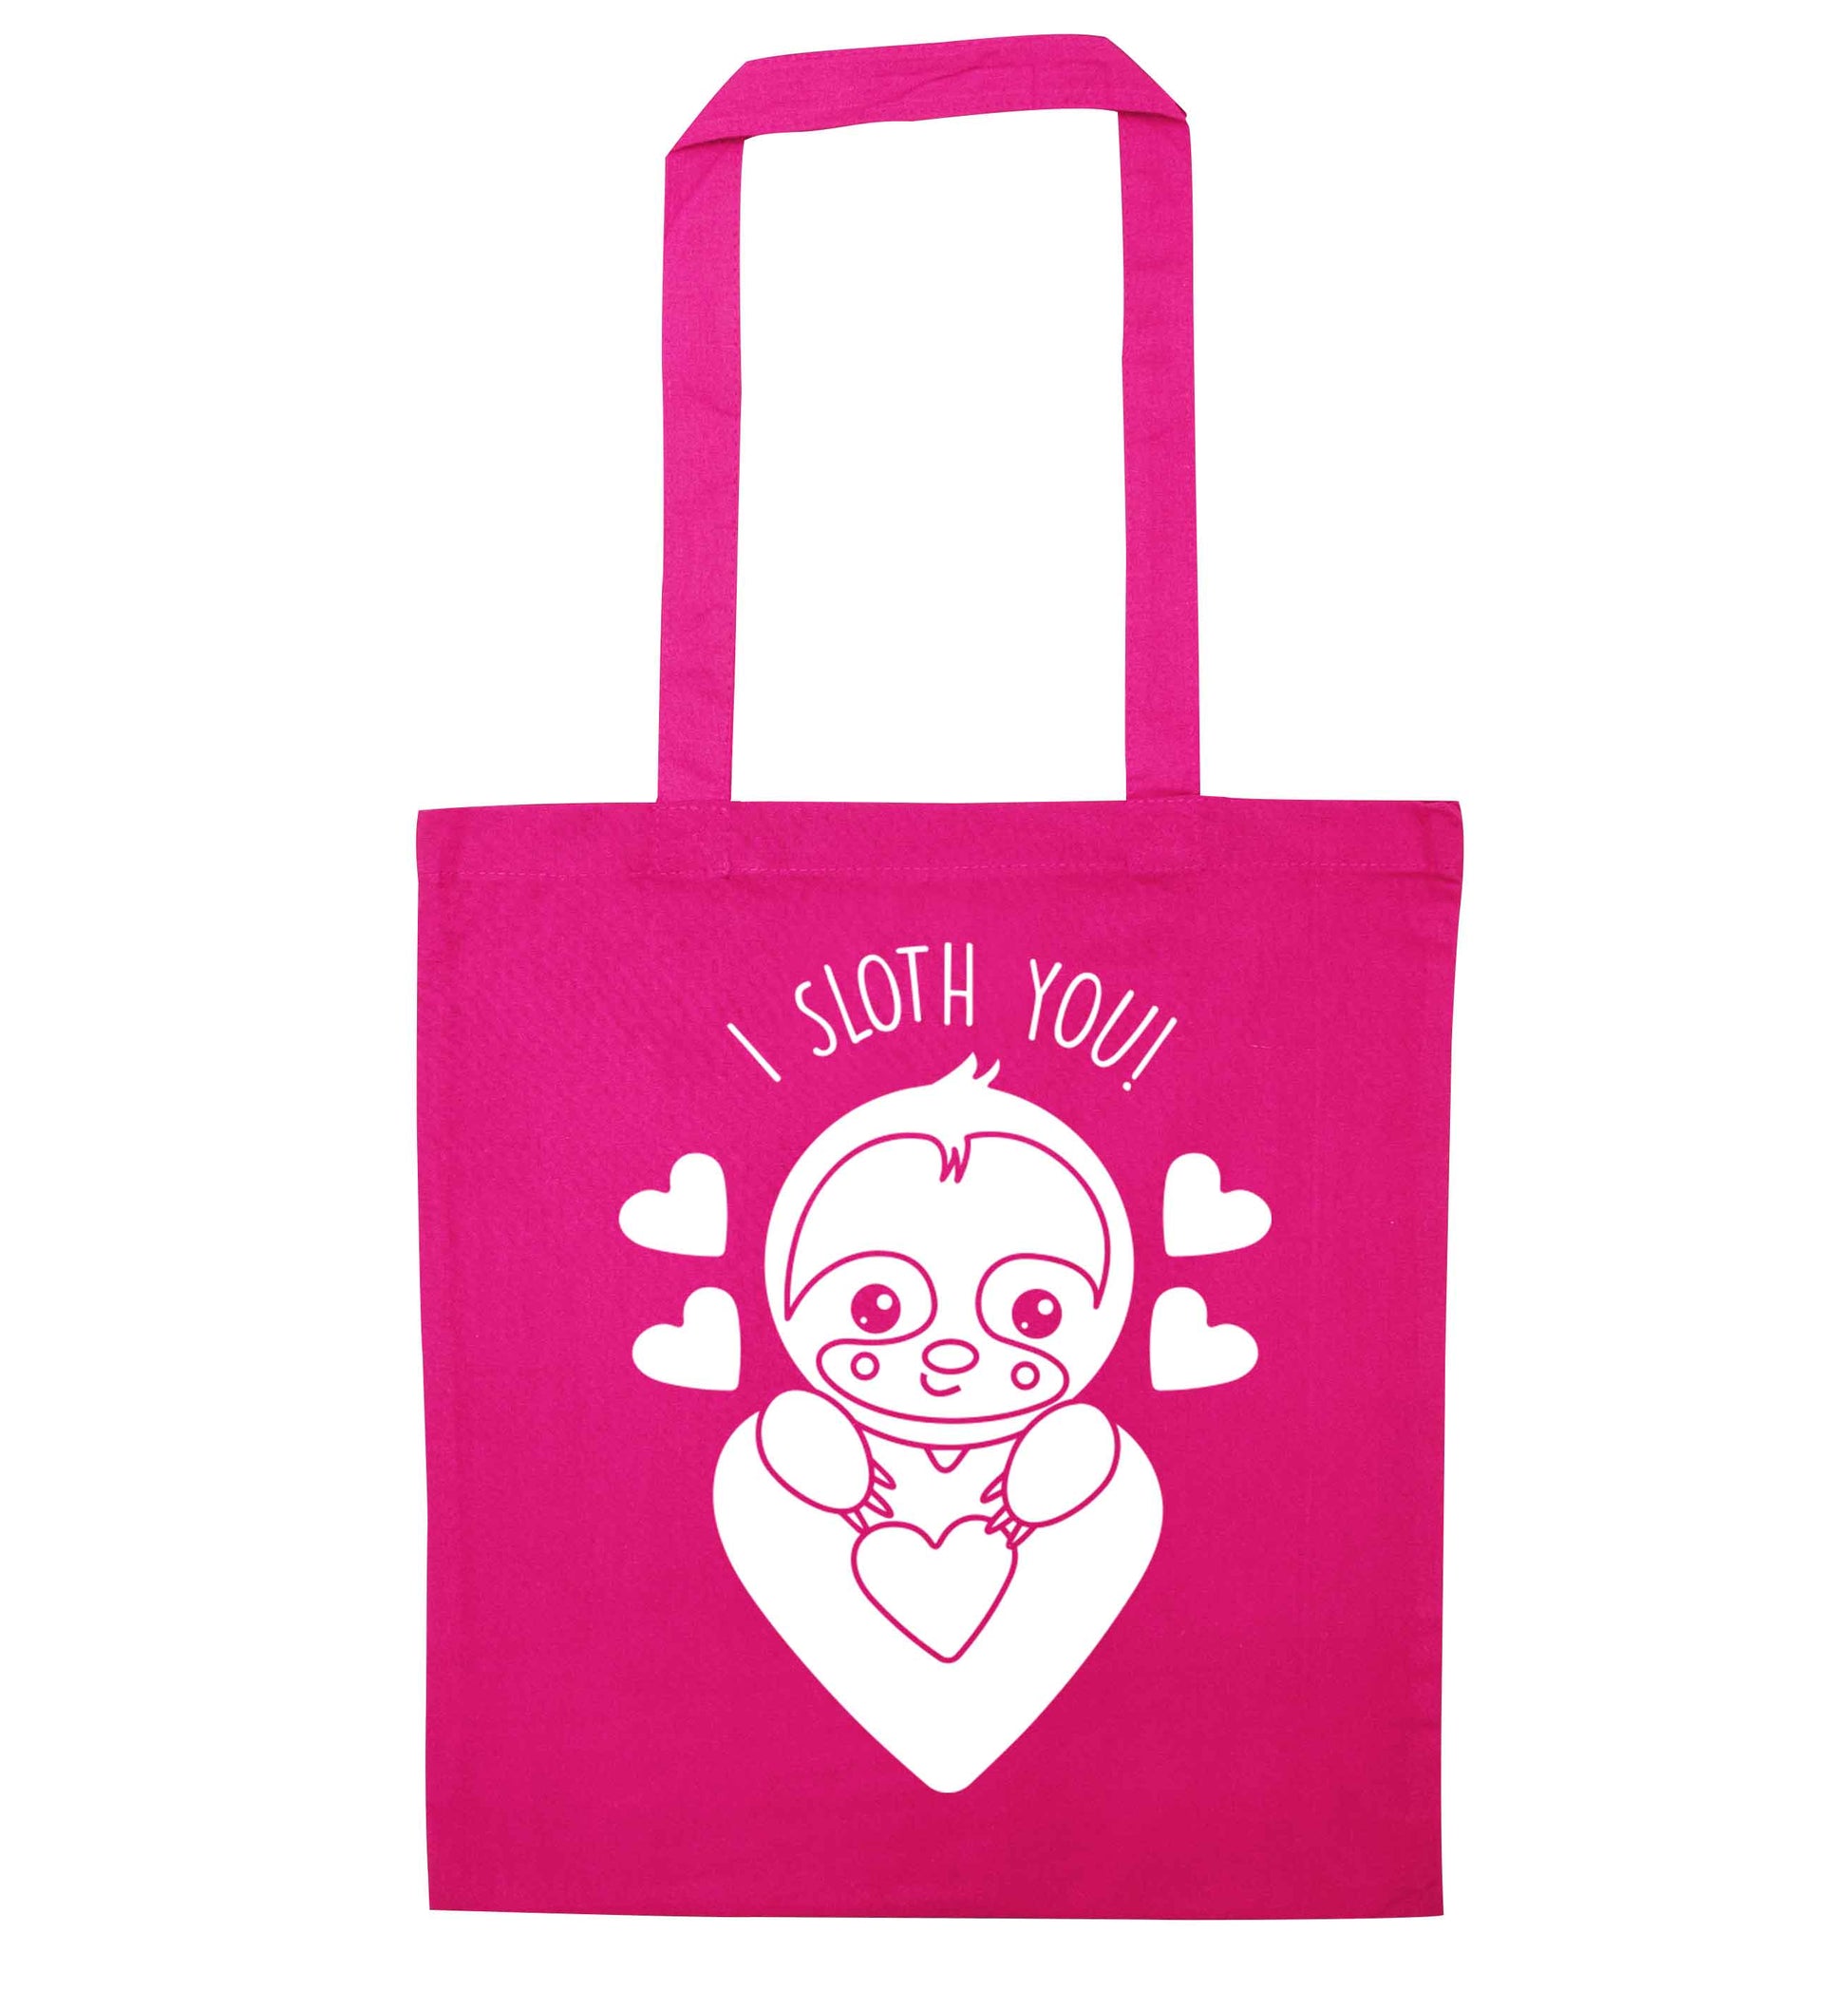 I sloth you pink tote bag